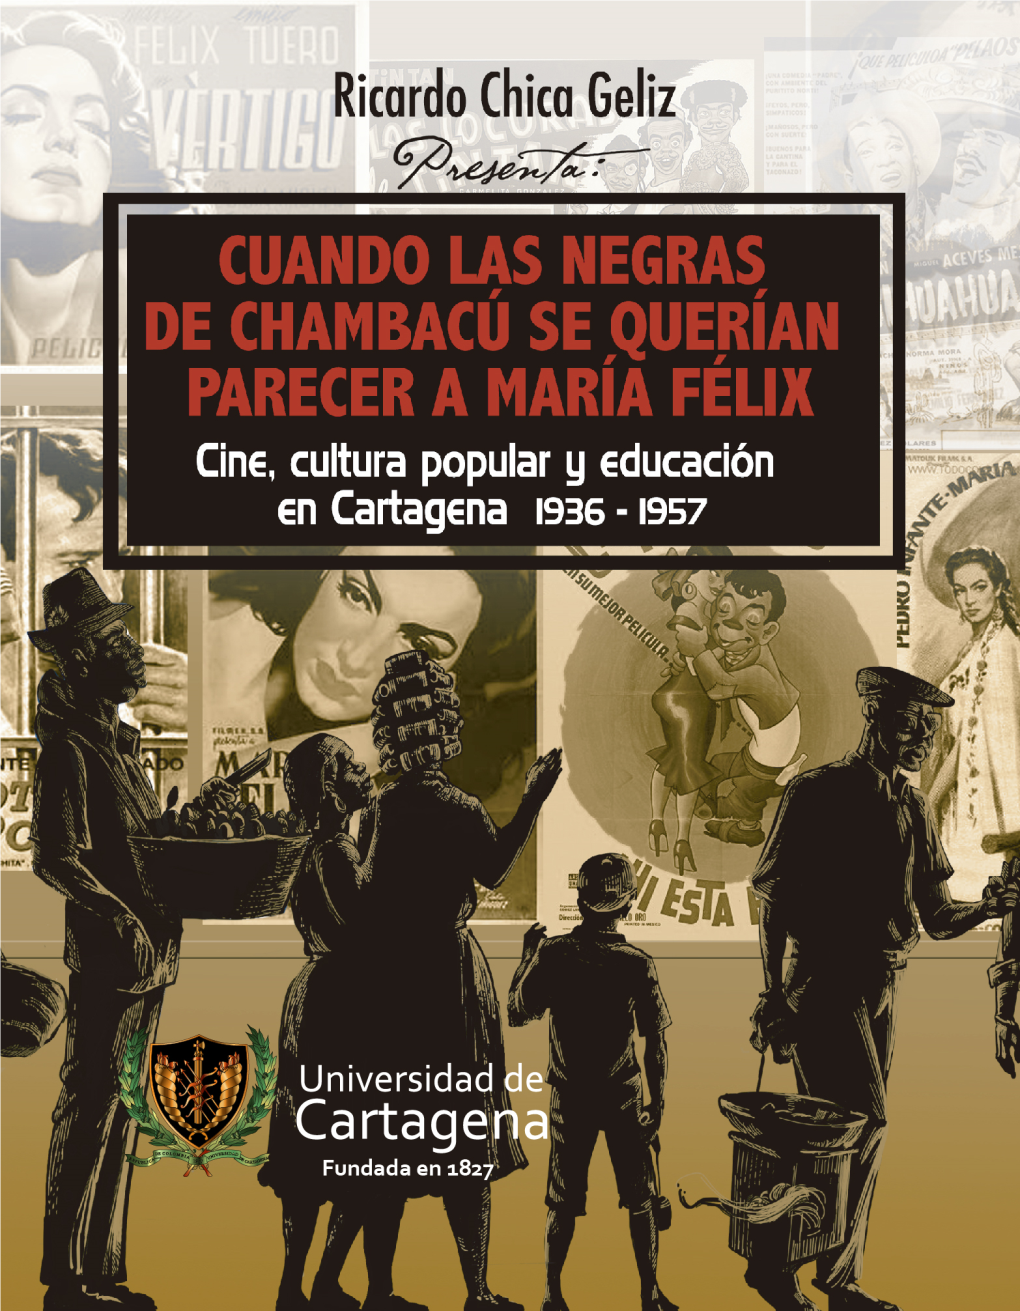 CUANDO LAS NEGRAS DE CHAMBACÚ SE QUERÍAN PARECER a MARÍA FÉLIX: Cine, Cultura Popular Y Educación En Cartagena 1936 – 1957